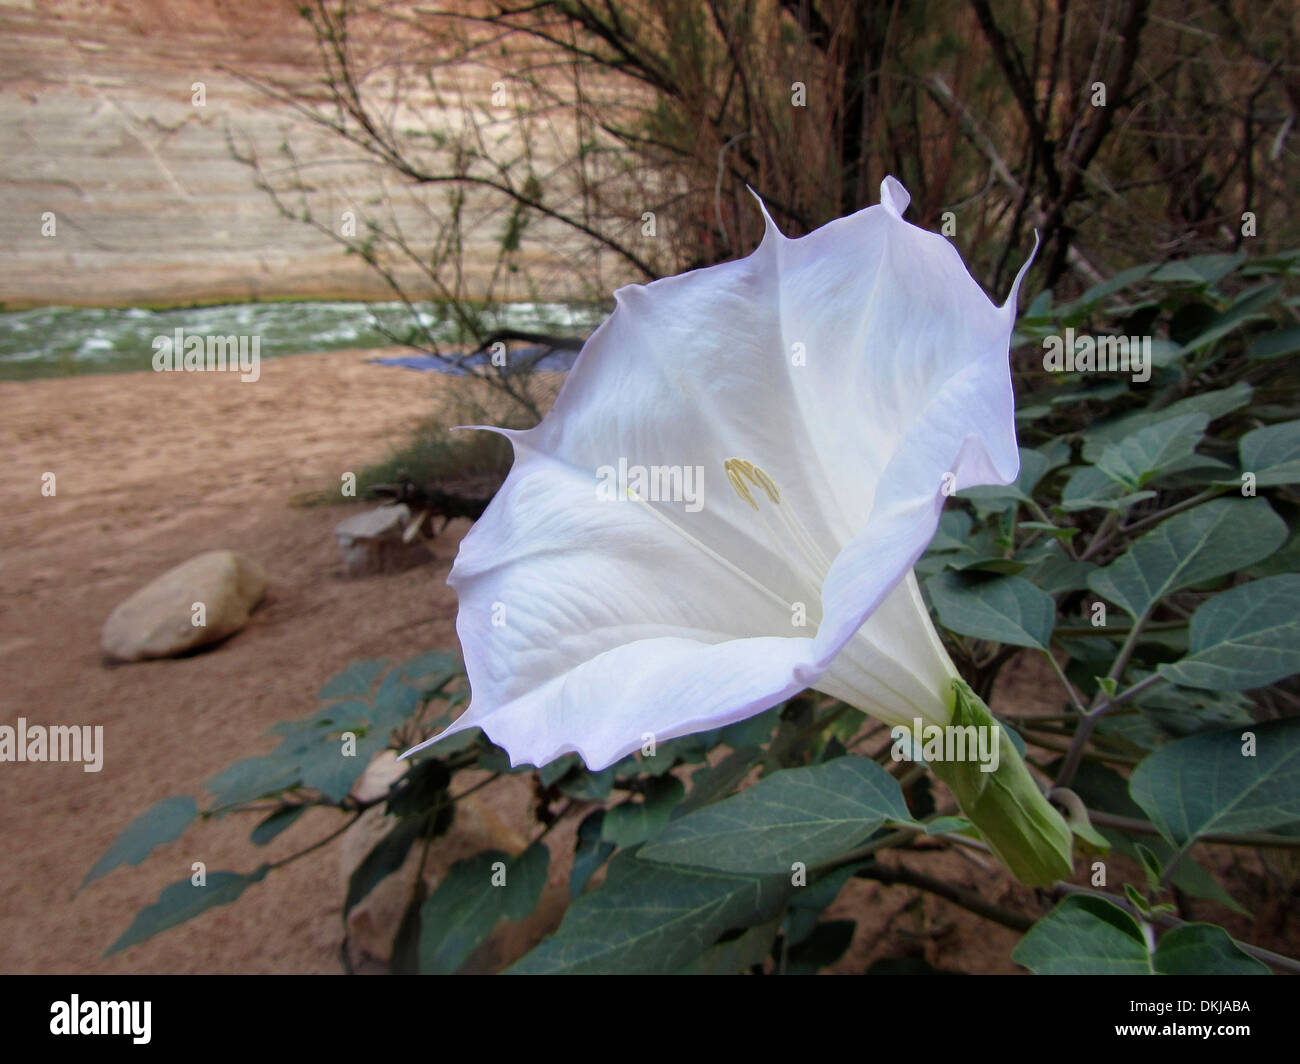 Sacred Datura fiore che sboccia nel Grand Canyon. Datura wrightii o sacra Datura è il nome di un velenoso pianta perenne. Foto Stock